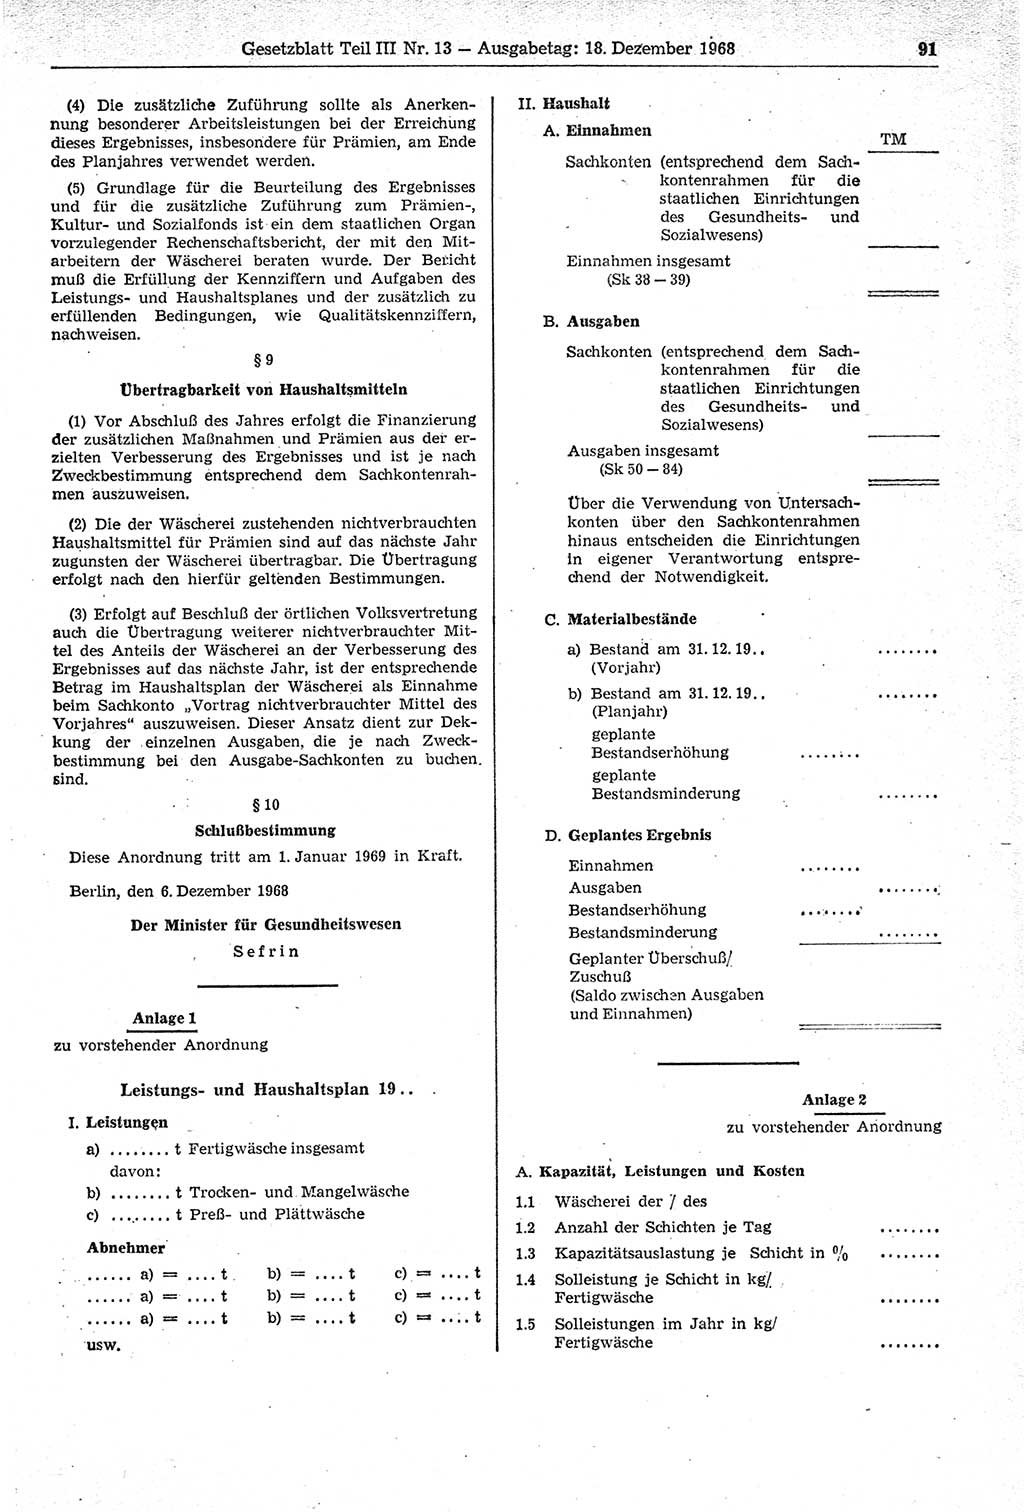 Gesetzblatt (GBl.) der Deutschen Demokratischen Republik (DDR) Teil ⅠⅠⅠ 1968, Seite 91 (GBl. DDR ⅠⅠⅠ 1968, S. 91)